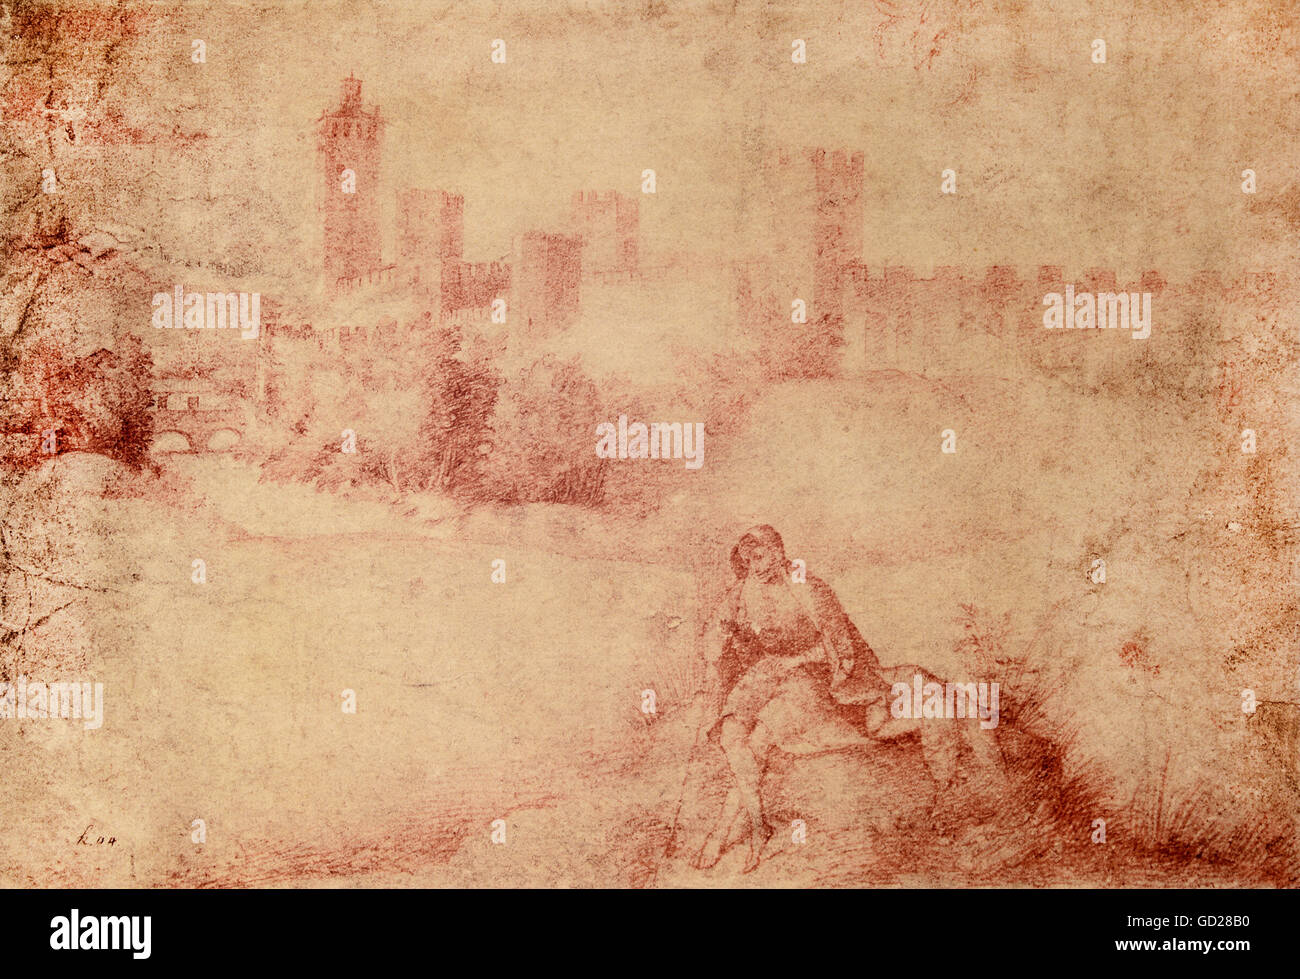 Bildende Kunst, Giorgione (Giorgio Barbarelli da Castelfranco, 1478-1510), Zeichnung, Landschaft mit Stadtmauer, Rötel, nach 1500, Wissenschaft, Wien, Artist's Urheberrecht nicht geklärt zu werden. Stockfoto